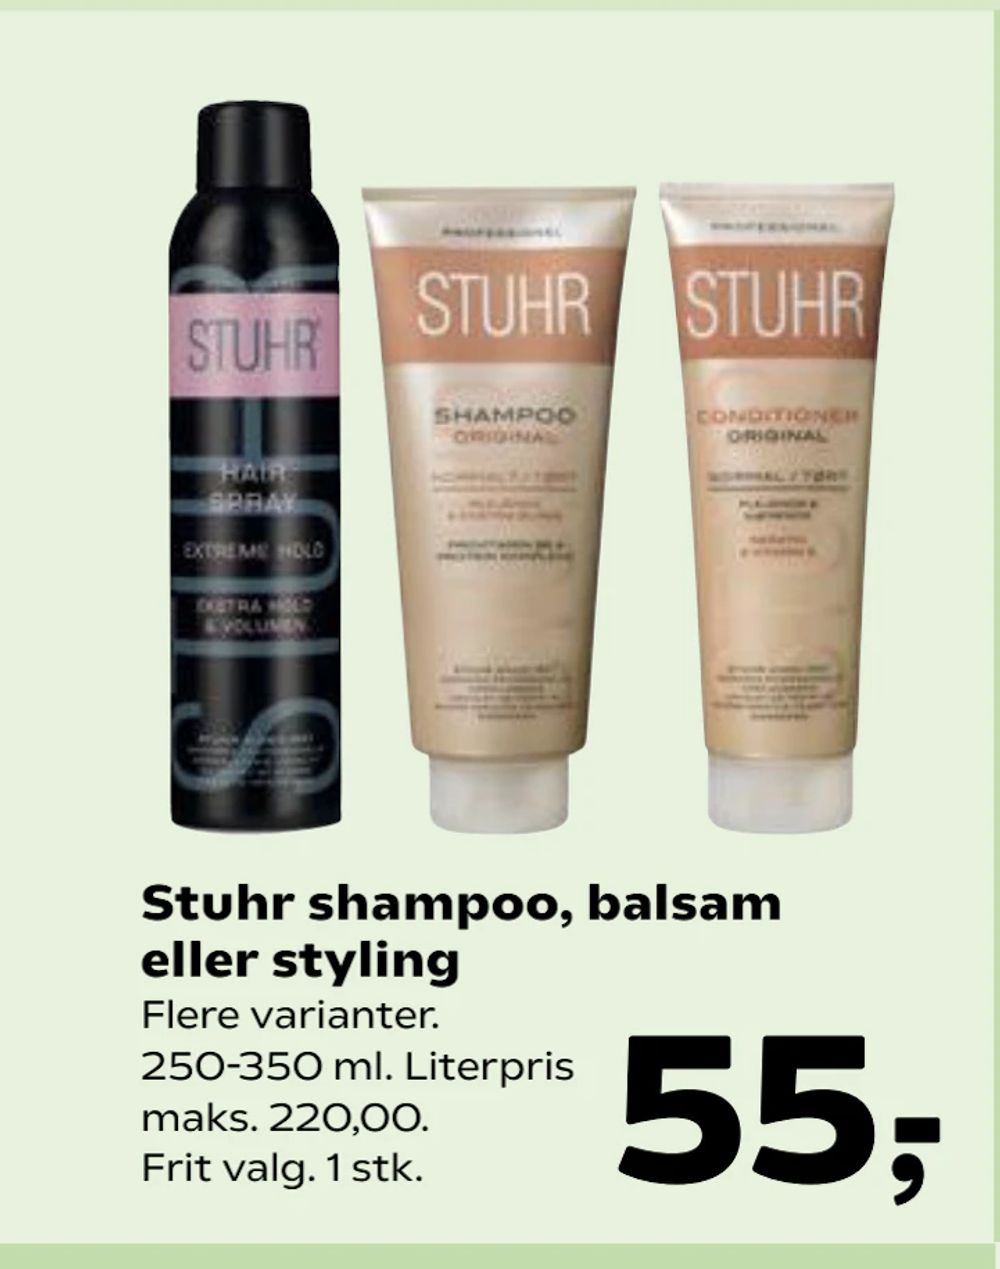 Tilbud på Stuhr shampoo, balsam eller styling fra Kvickly til 55 kr.